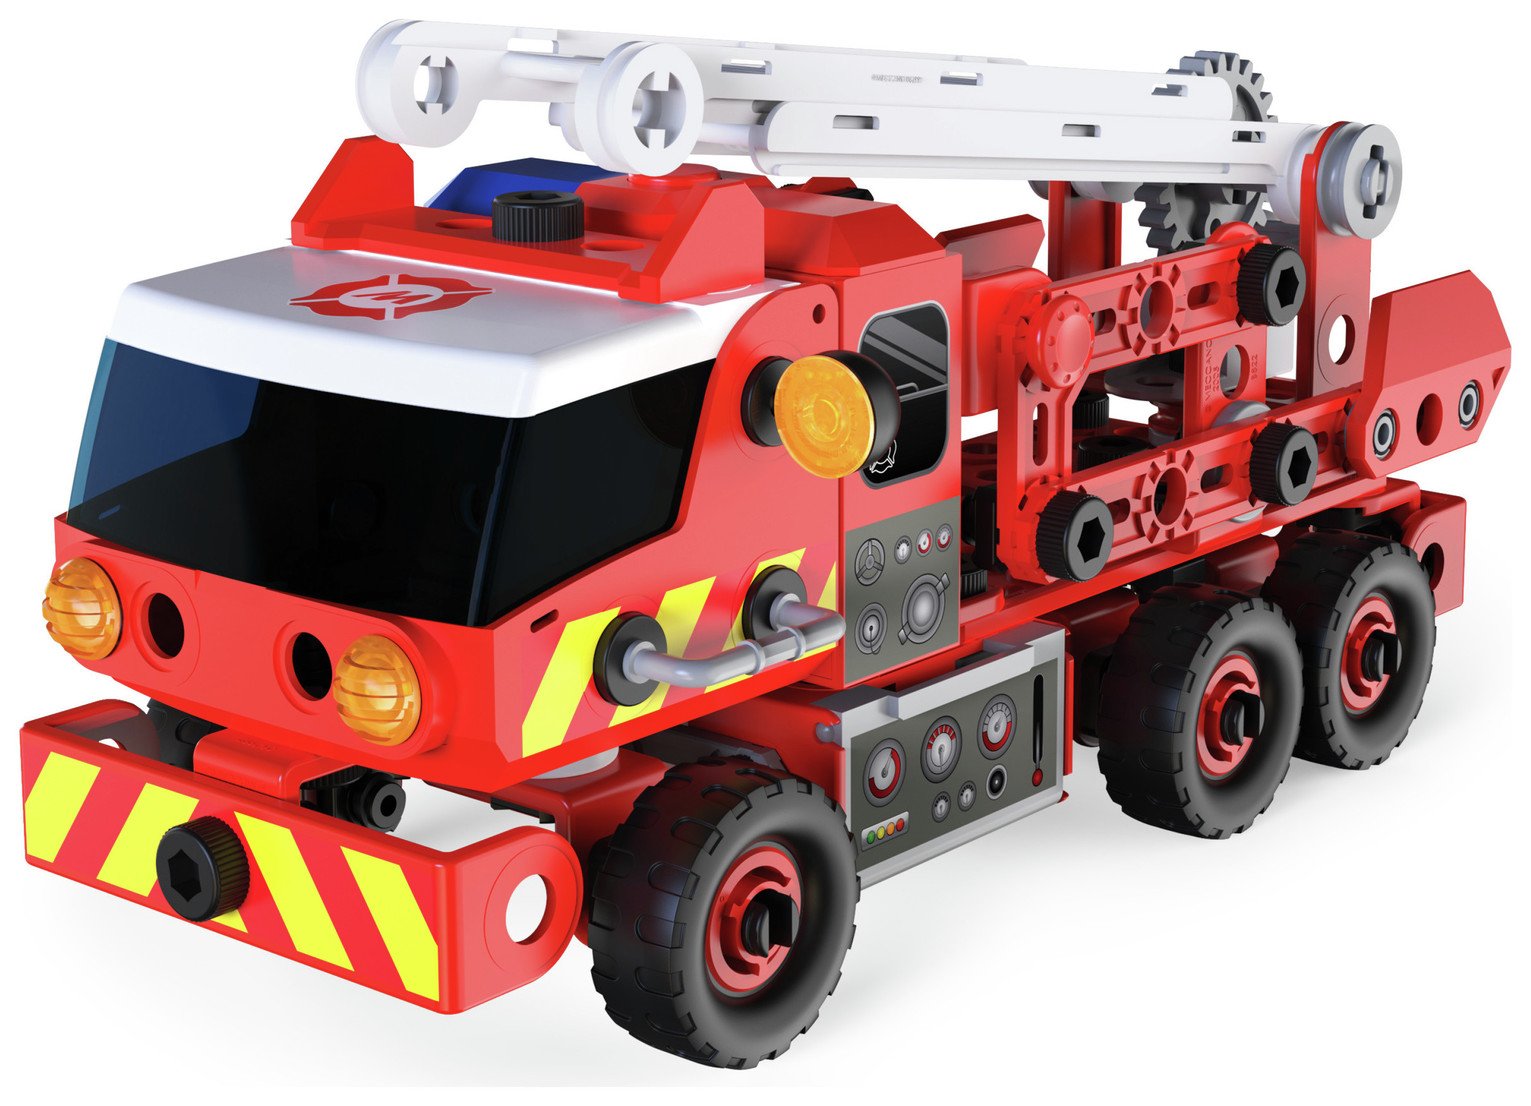 Meccano Junior Fire Truck review